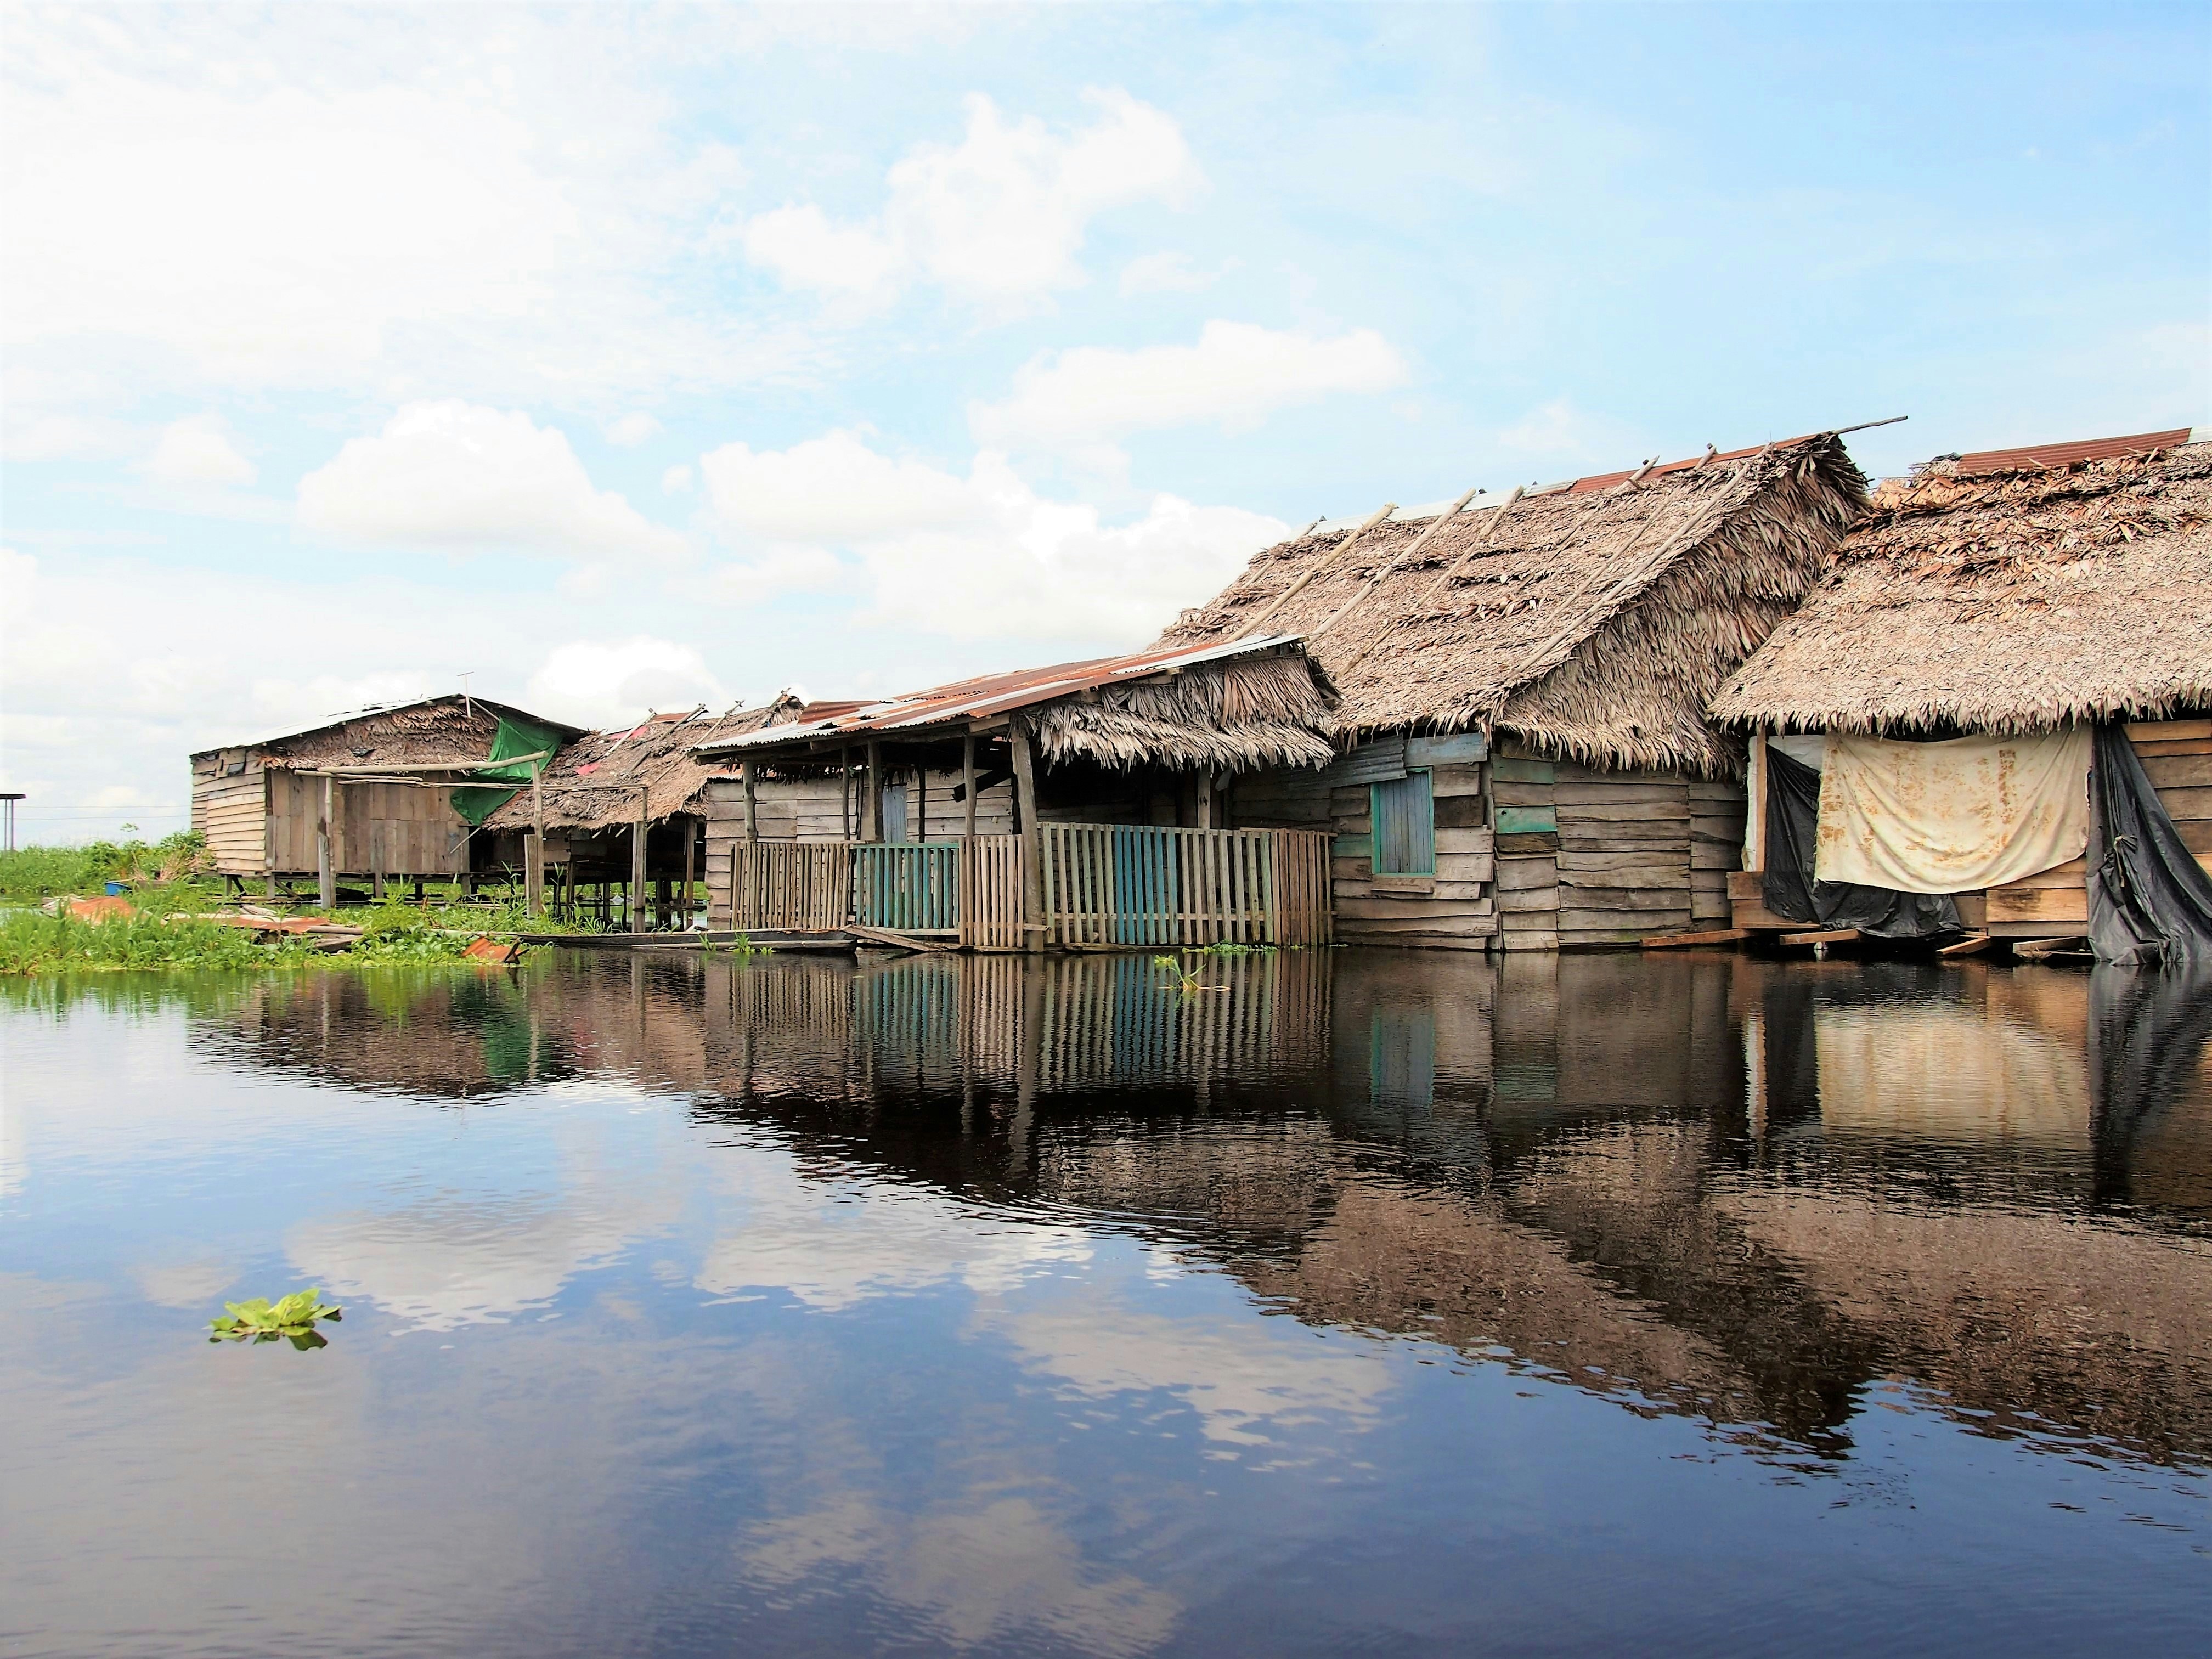 Iquitos, Peru. Amazon